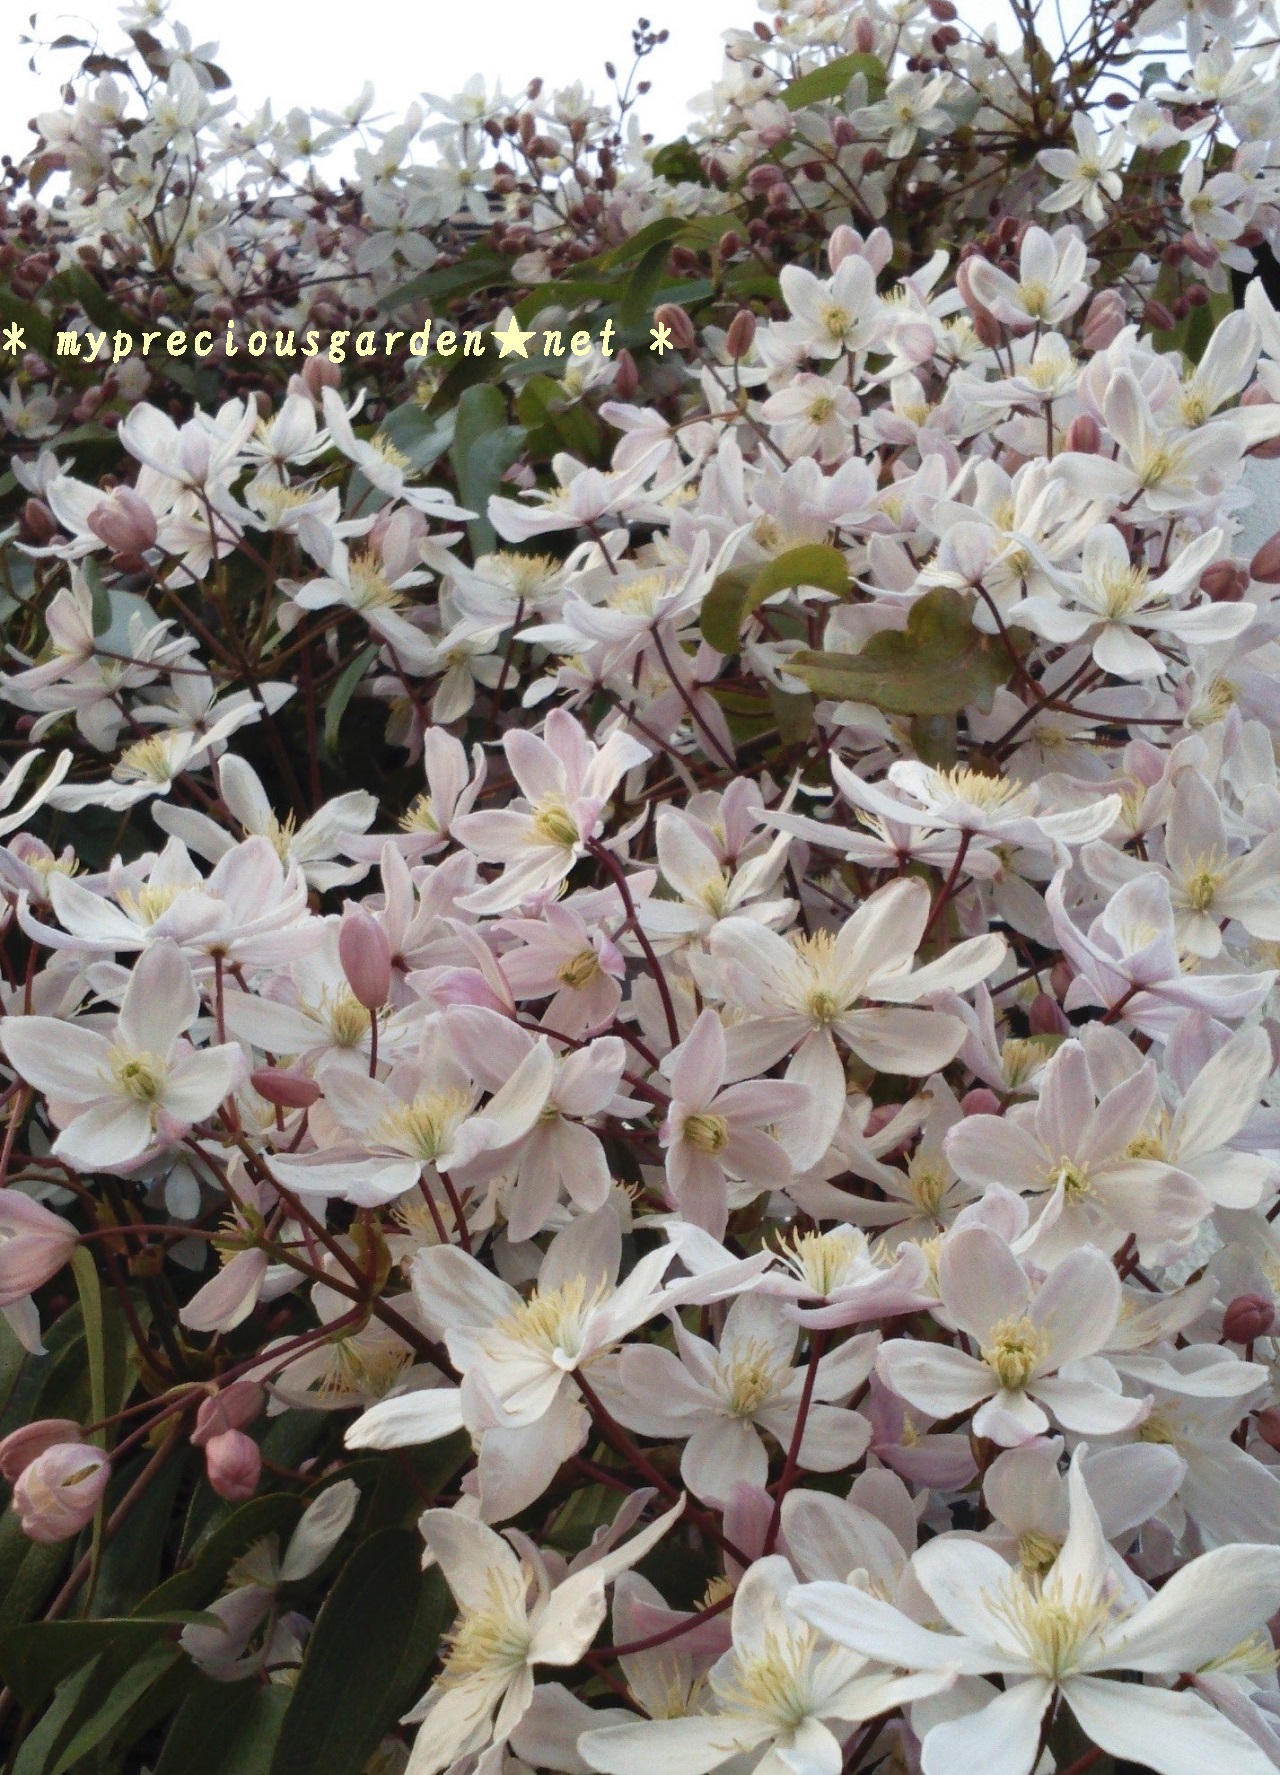 ブログ 早春咲きクレマチス アーマンディ アップルブロッサム の蕾が膨らみはじめ 冬咲きクレマチス アンスンエンシス が今頃咲き始めました My Precious Garden 大好きな植物とすごす マイプレシャスガーデン